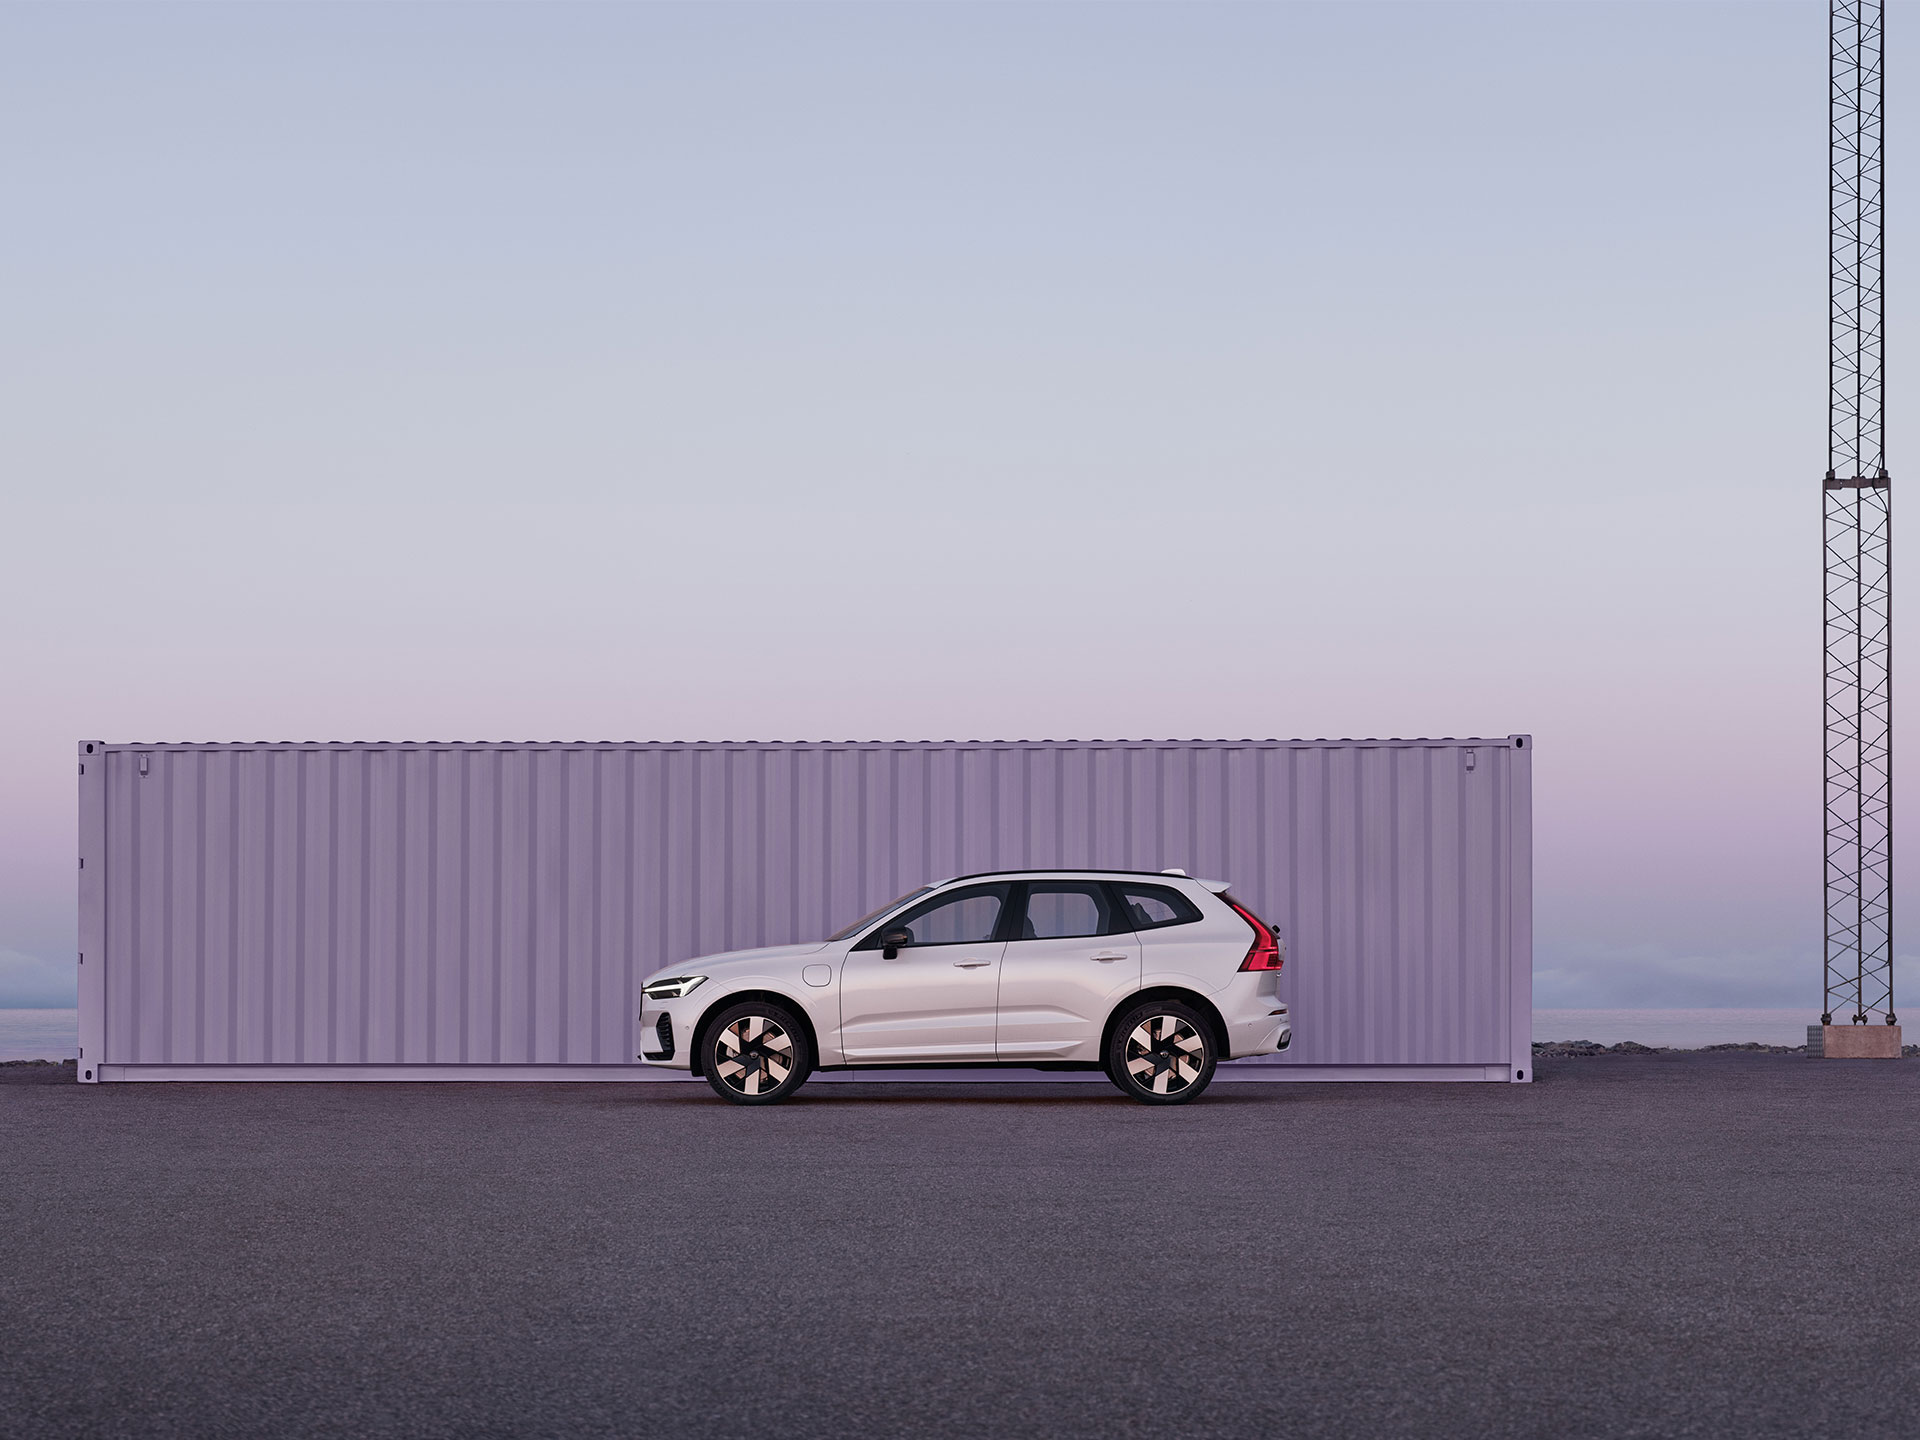 Volvo XC60 garé dans un cadre industriel isolé, dans la lumière mauve et rose d'un lever de soleil.